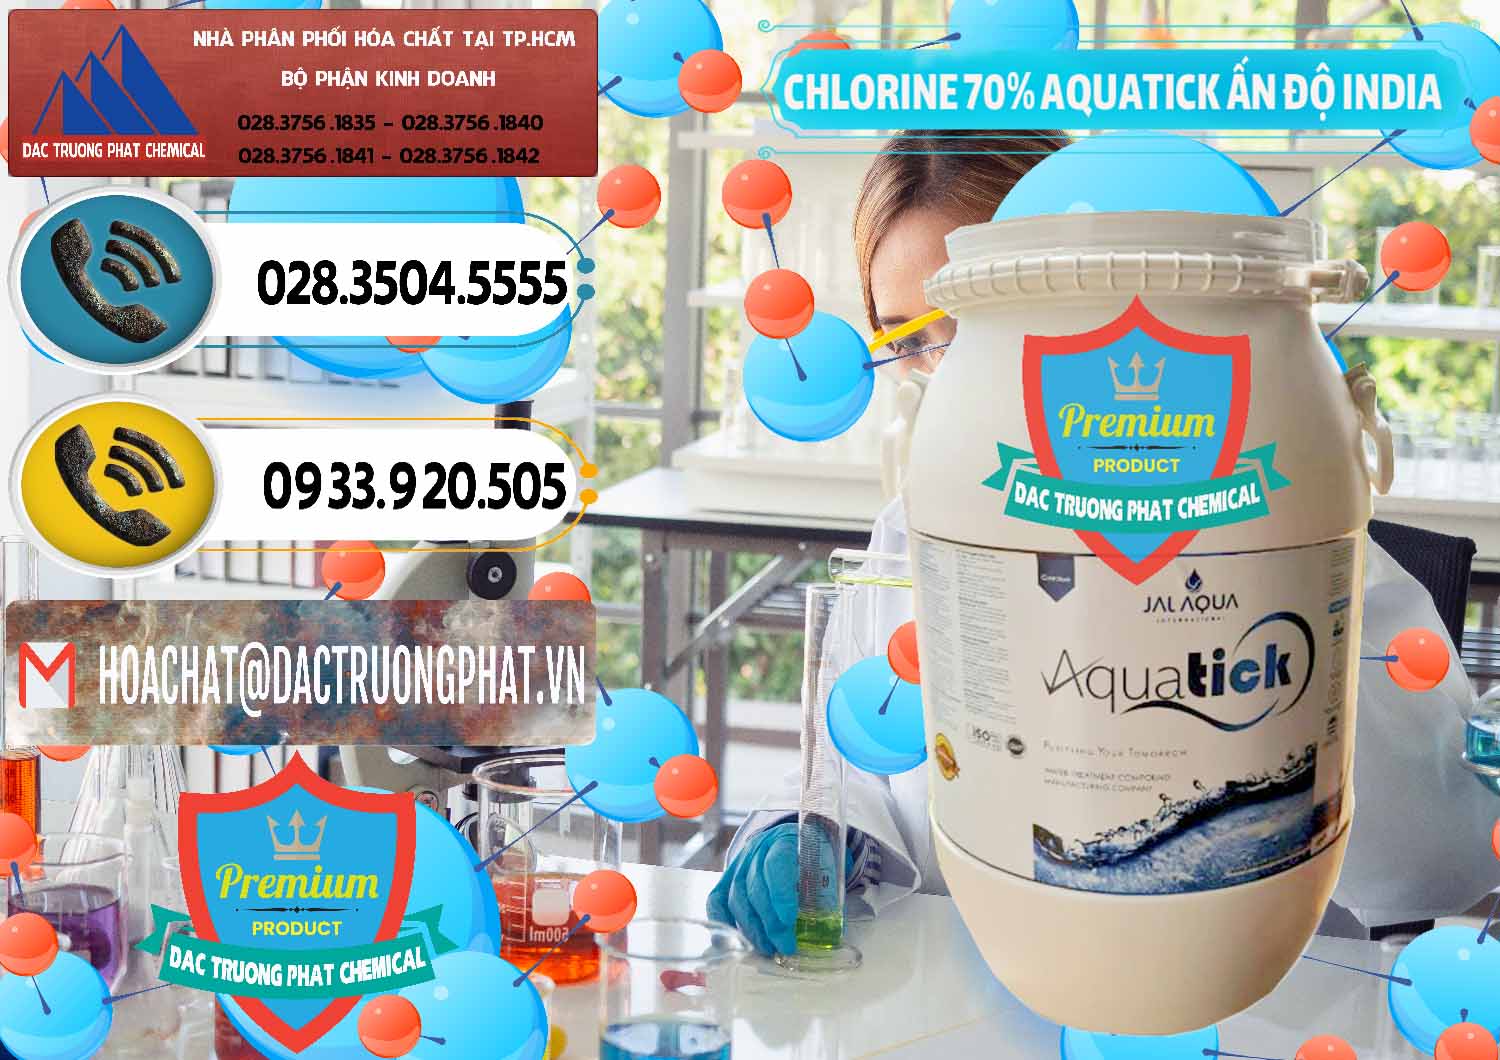 Công ty cung ứng _ bán Chlorine – Clorin 70% Aquatick Jal Aqua Ấn Độ India - 0215 - Chuyên phân phối và cung ứng hóa chất tại TP.HCM - hoachatdetnhuom.vn